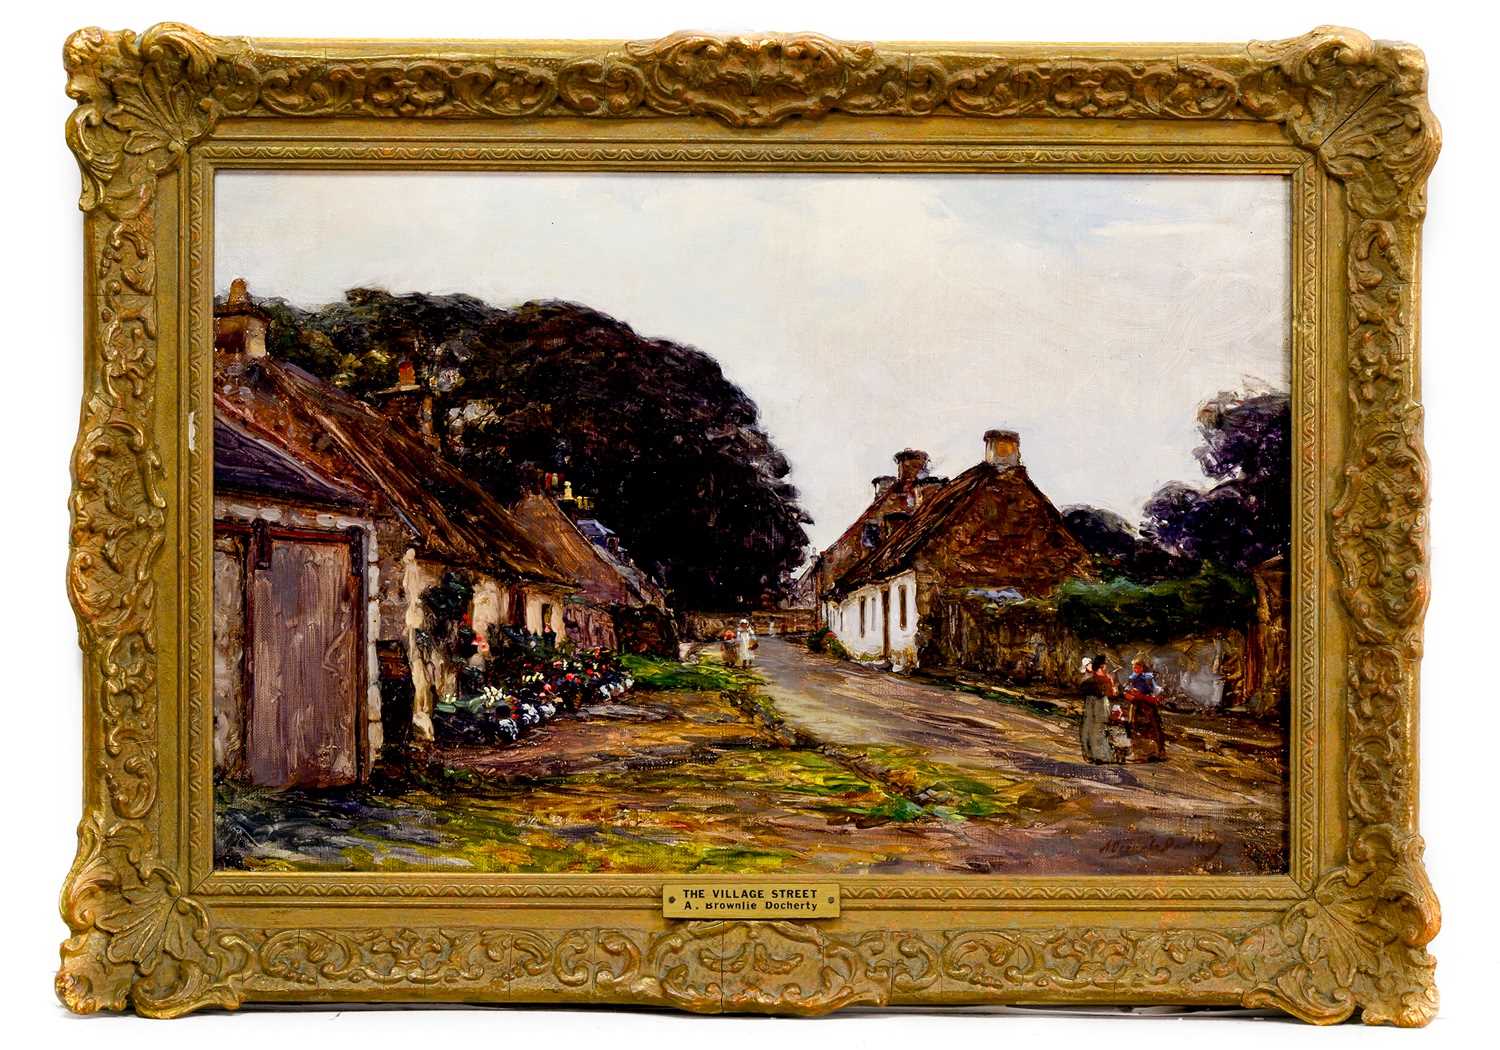 ALEXANDER BROWNLIE DOCHARTY (SCOTTISH 1862 - 1940), THE VILLAGE STREET